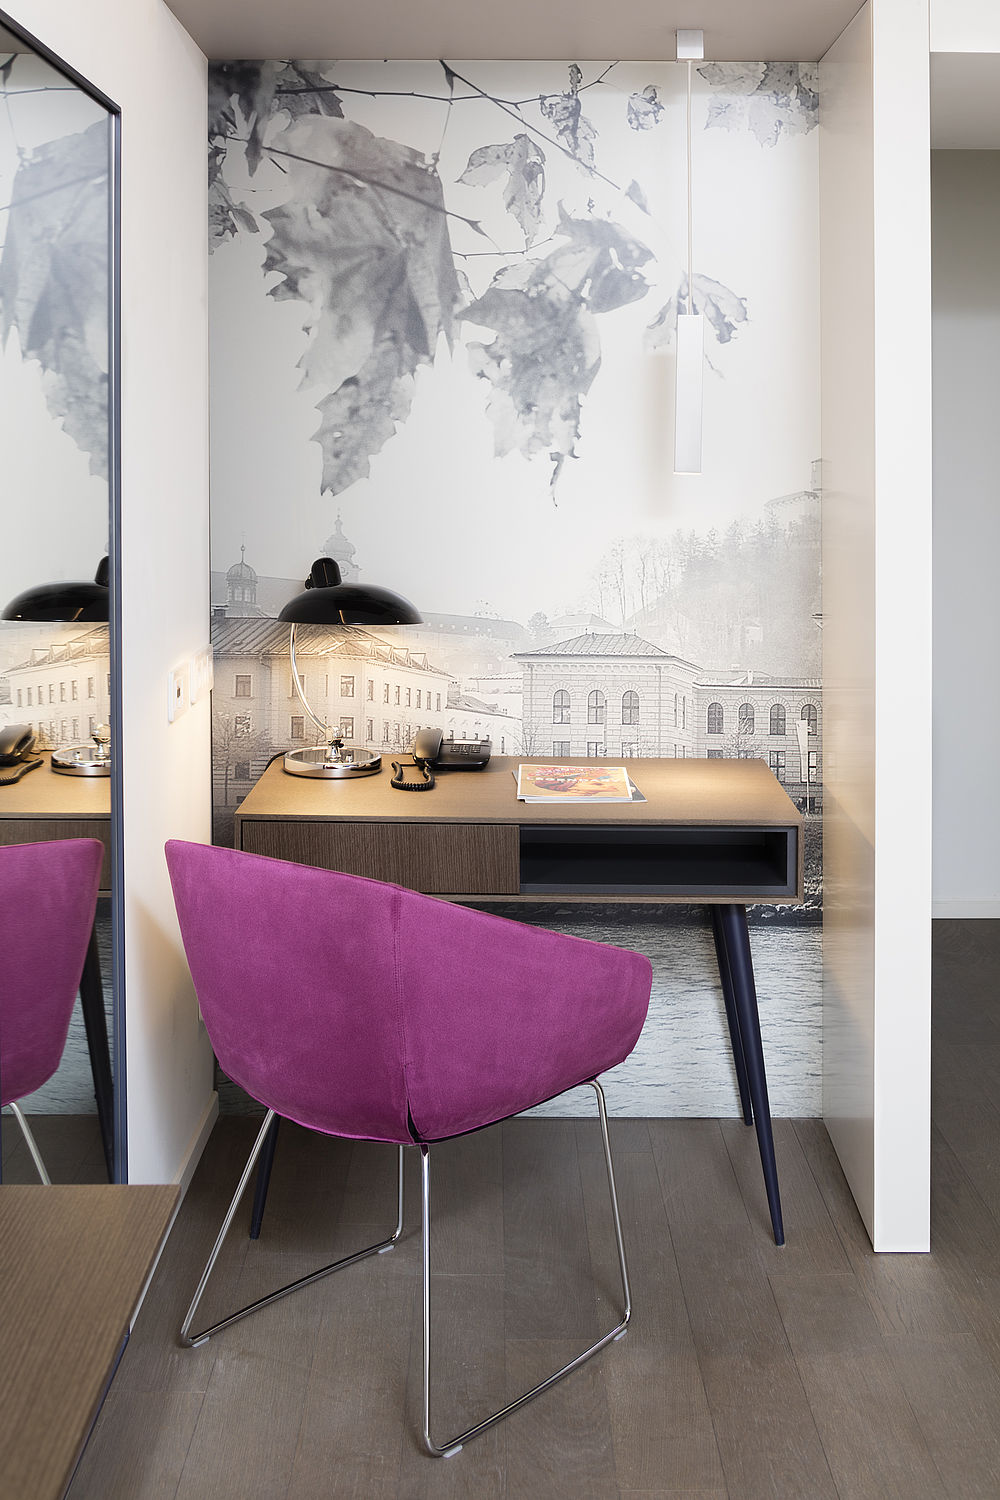 Working Space eines Zimmers im Luxushotel in Salzburg mit magentafarbenem Samtsessel, kleinem Holztisch und Schreibtischlampe